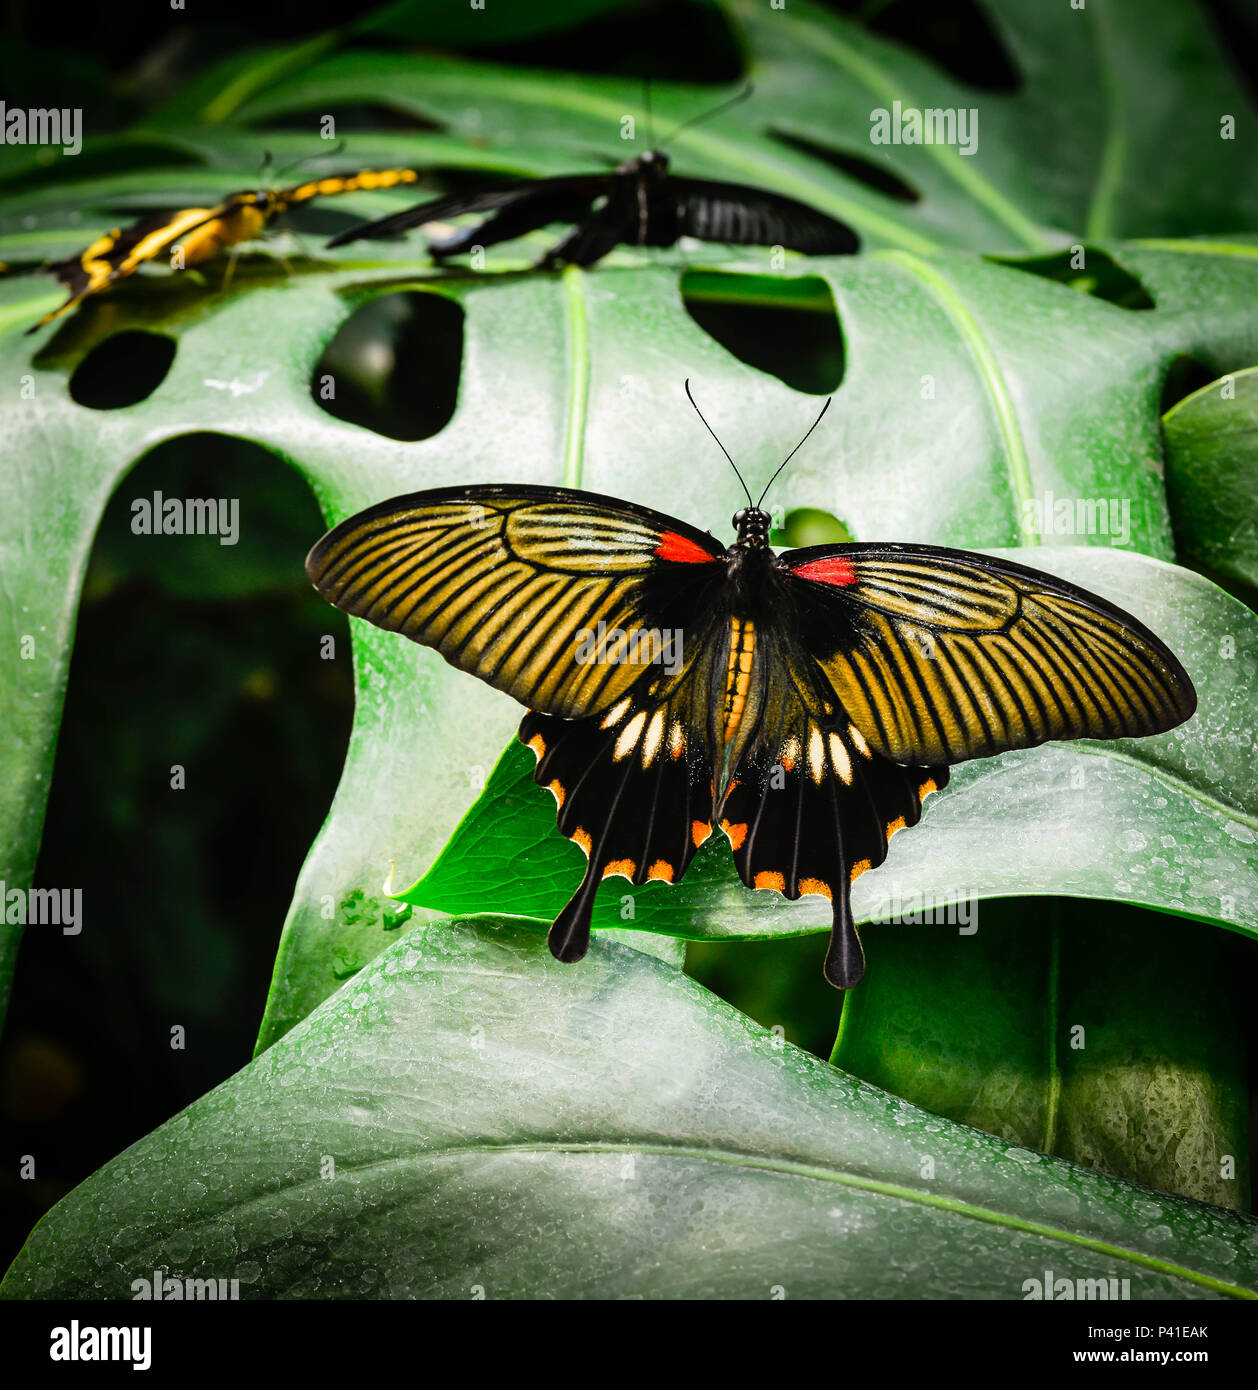 Un papillon exotique de l'or, noir, rouge et orange, reposant sur les feuilles des plantes vertes géantes avec d'autres butterfiles in soft focus contexte Banque D'Images